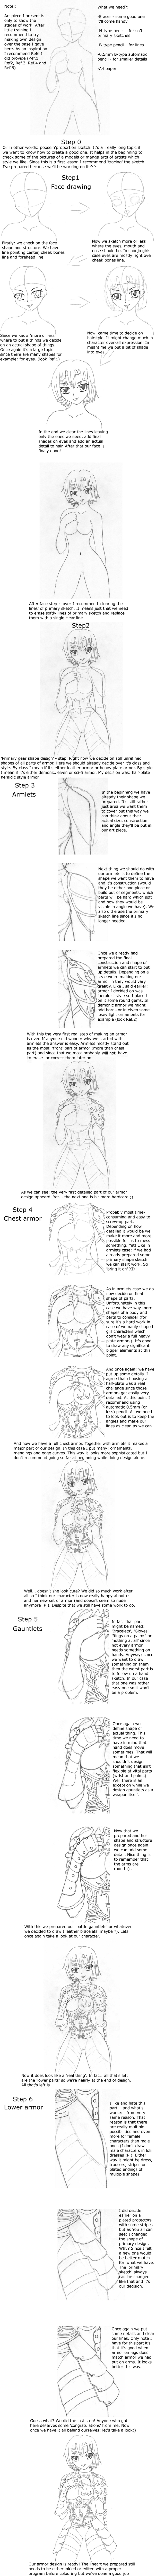 Armor design tutorial